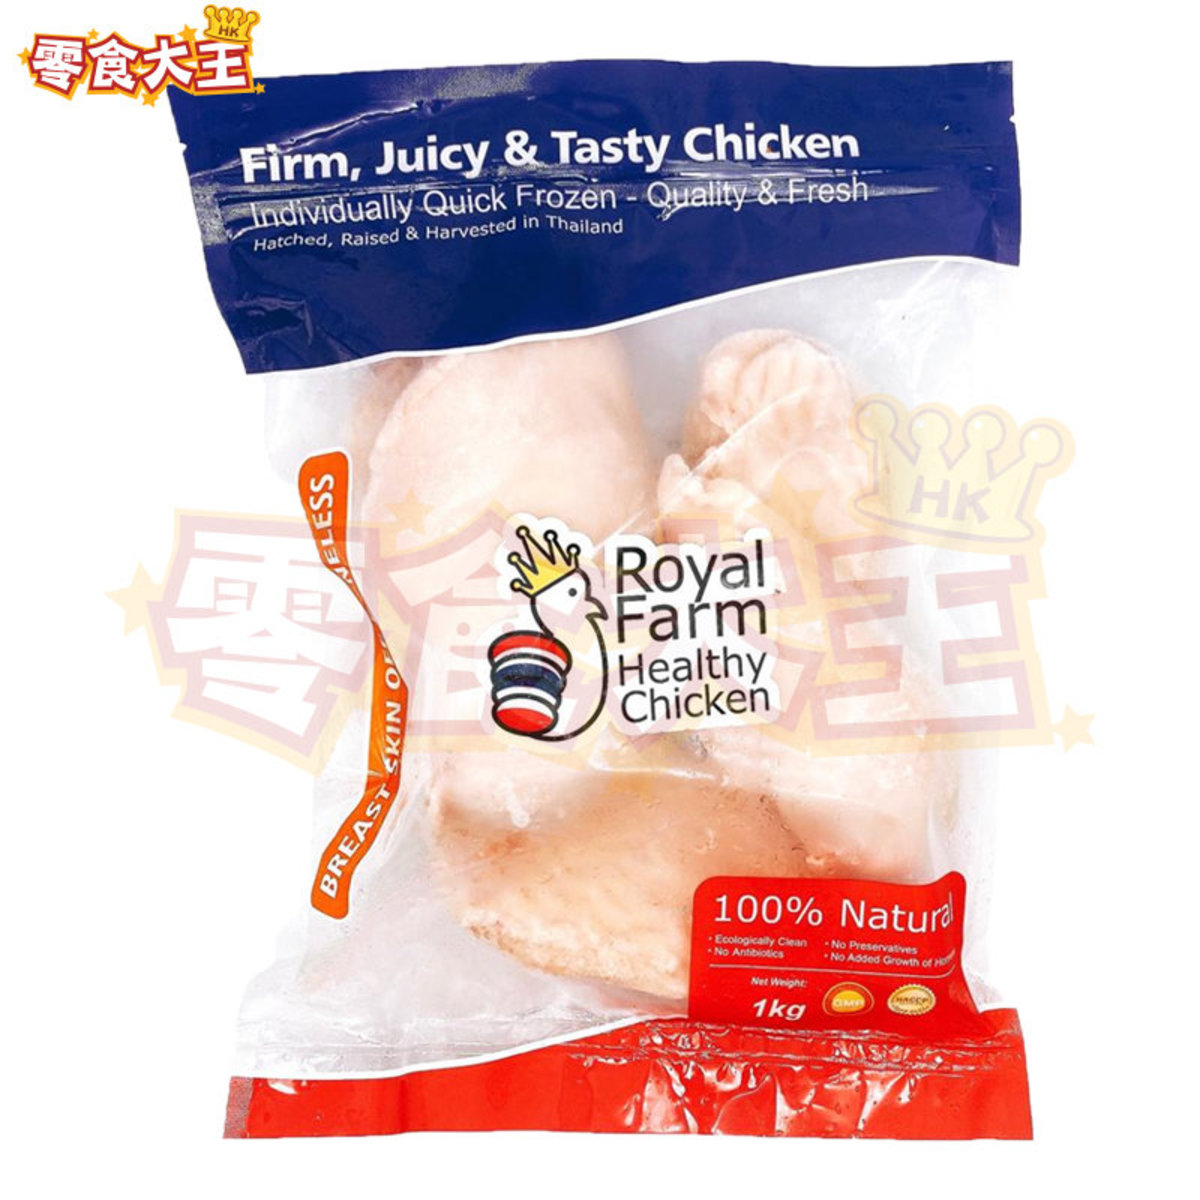 急凍無激素雞胸肉 1KG [無激素] [無添加]  (4897094880030)(急凍-18°C) [泰國產Royal Farm]